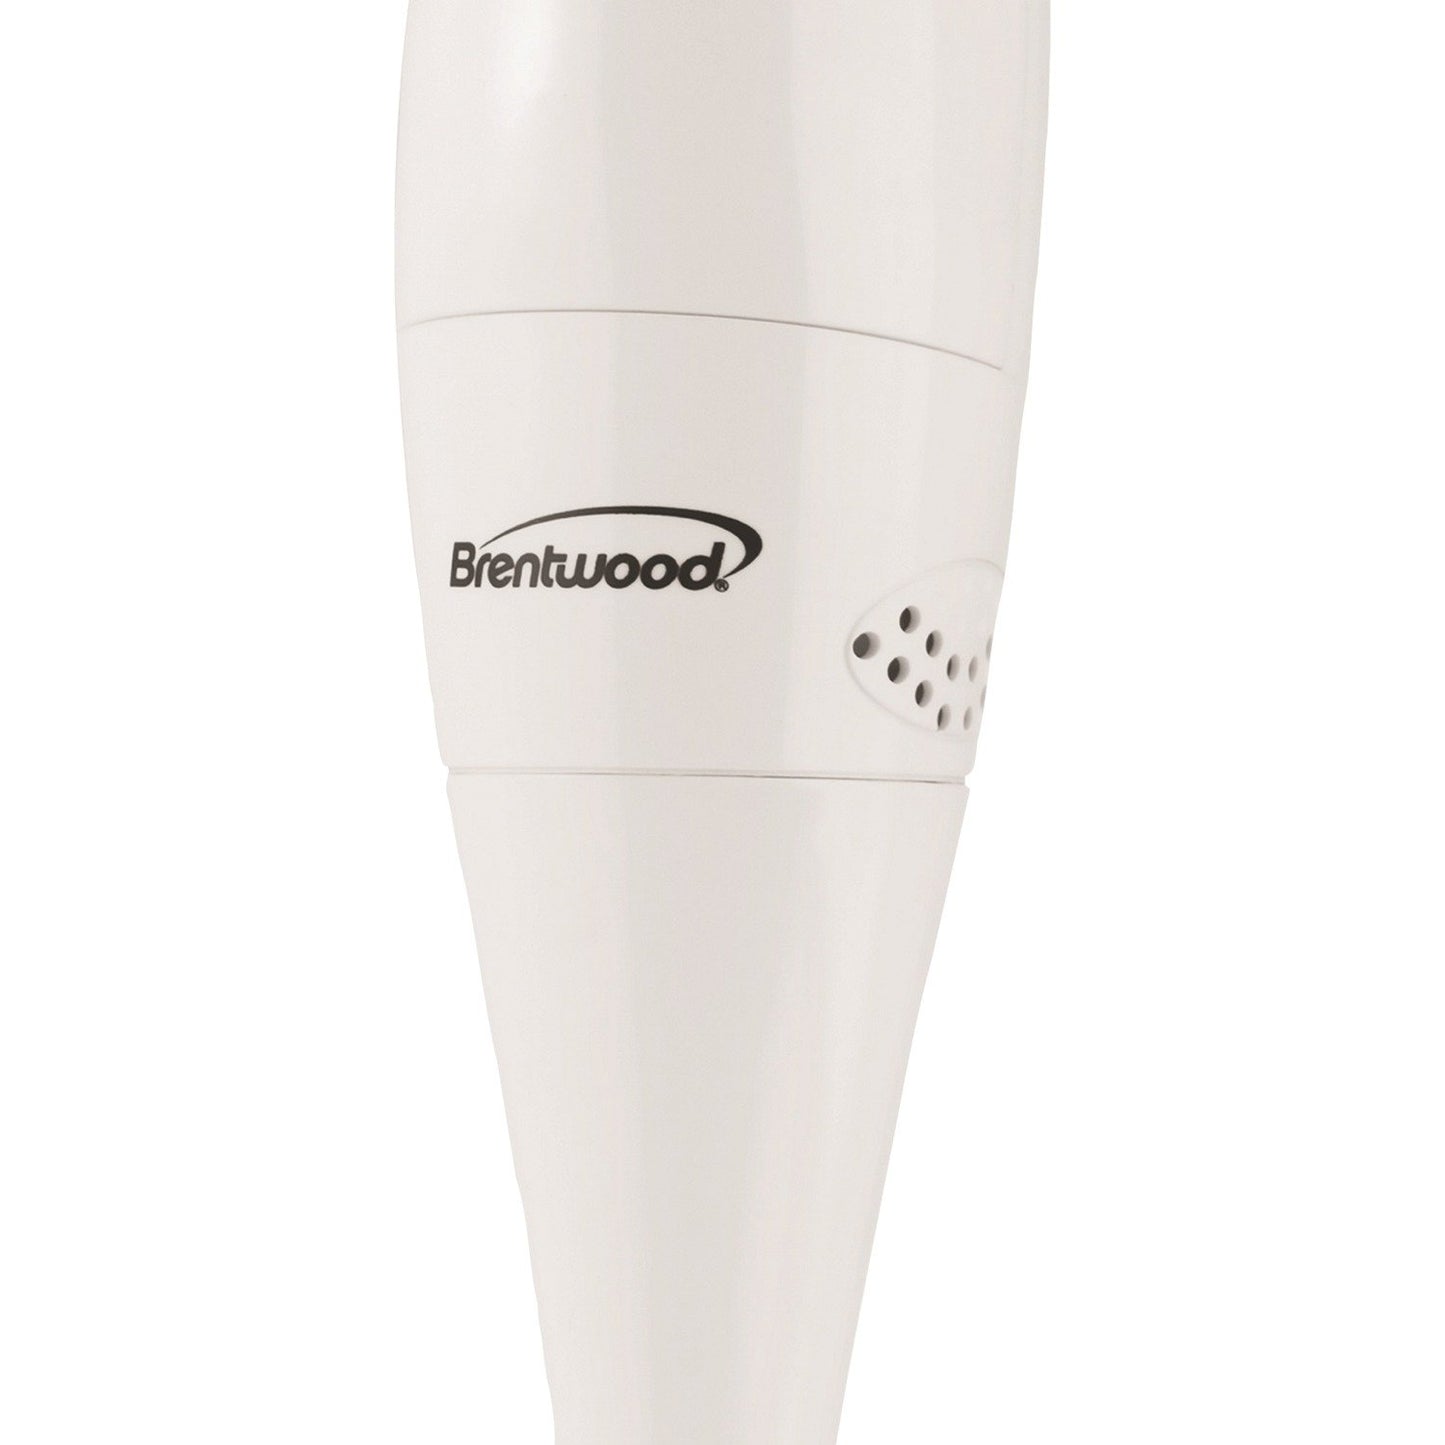 BRENTWOOD HB-31 2-Speed 200-Watt Hand Blender (White)